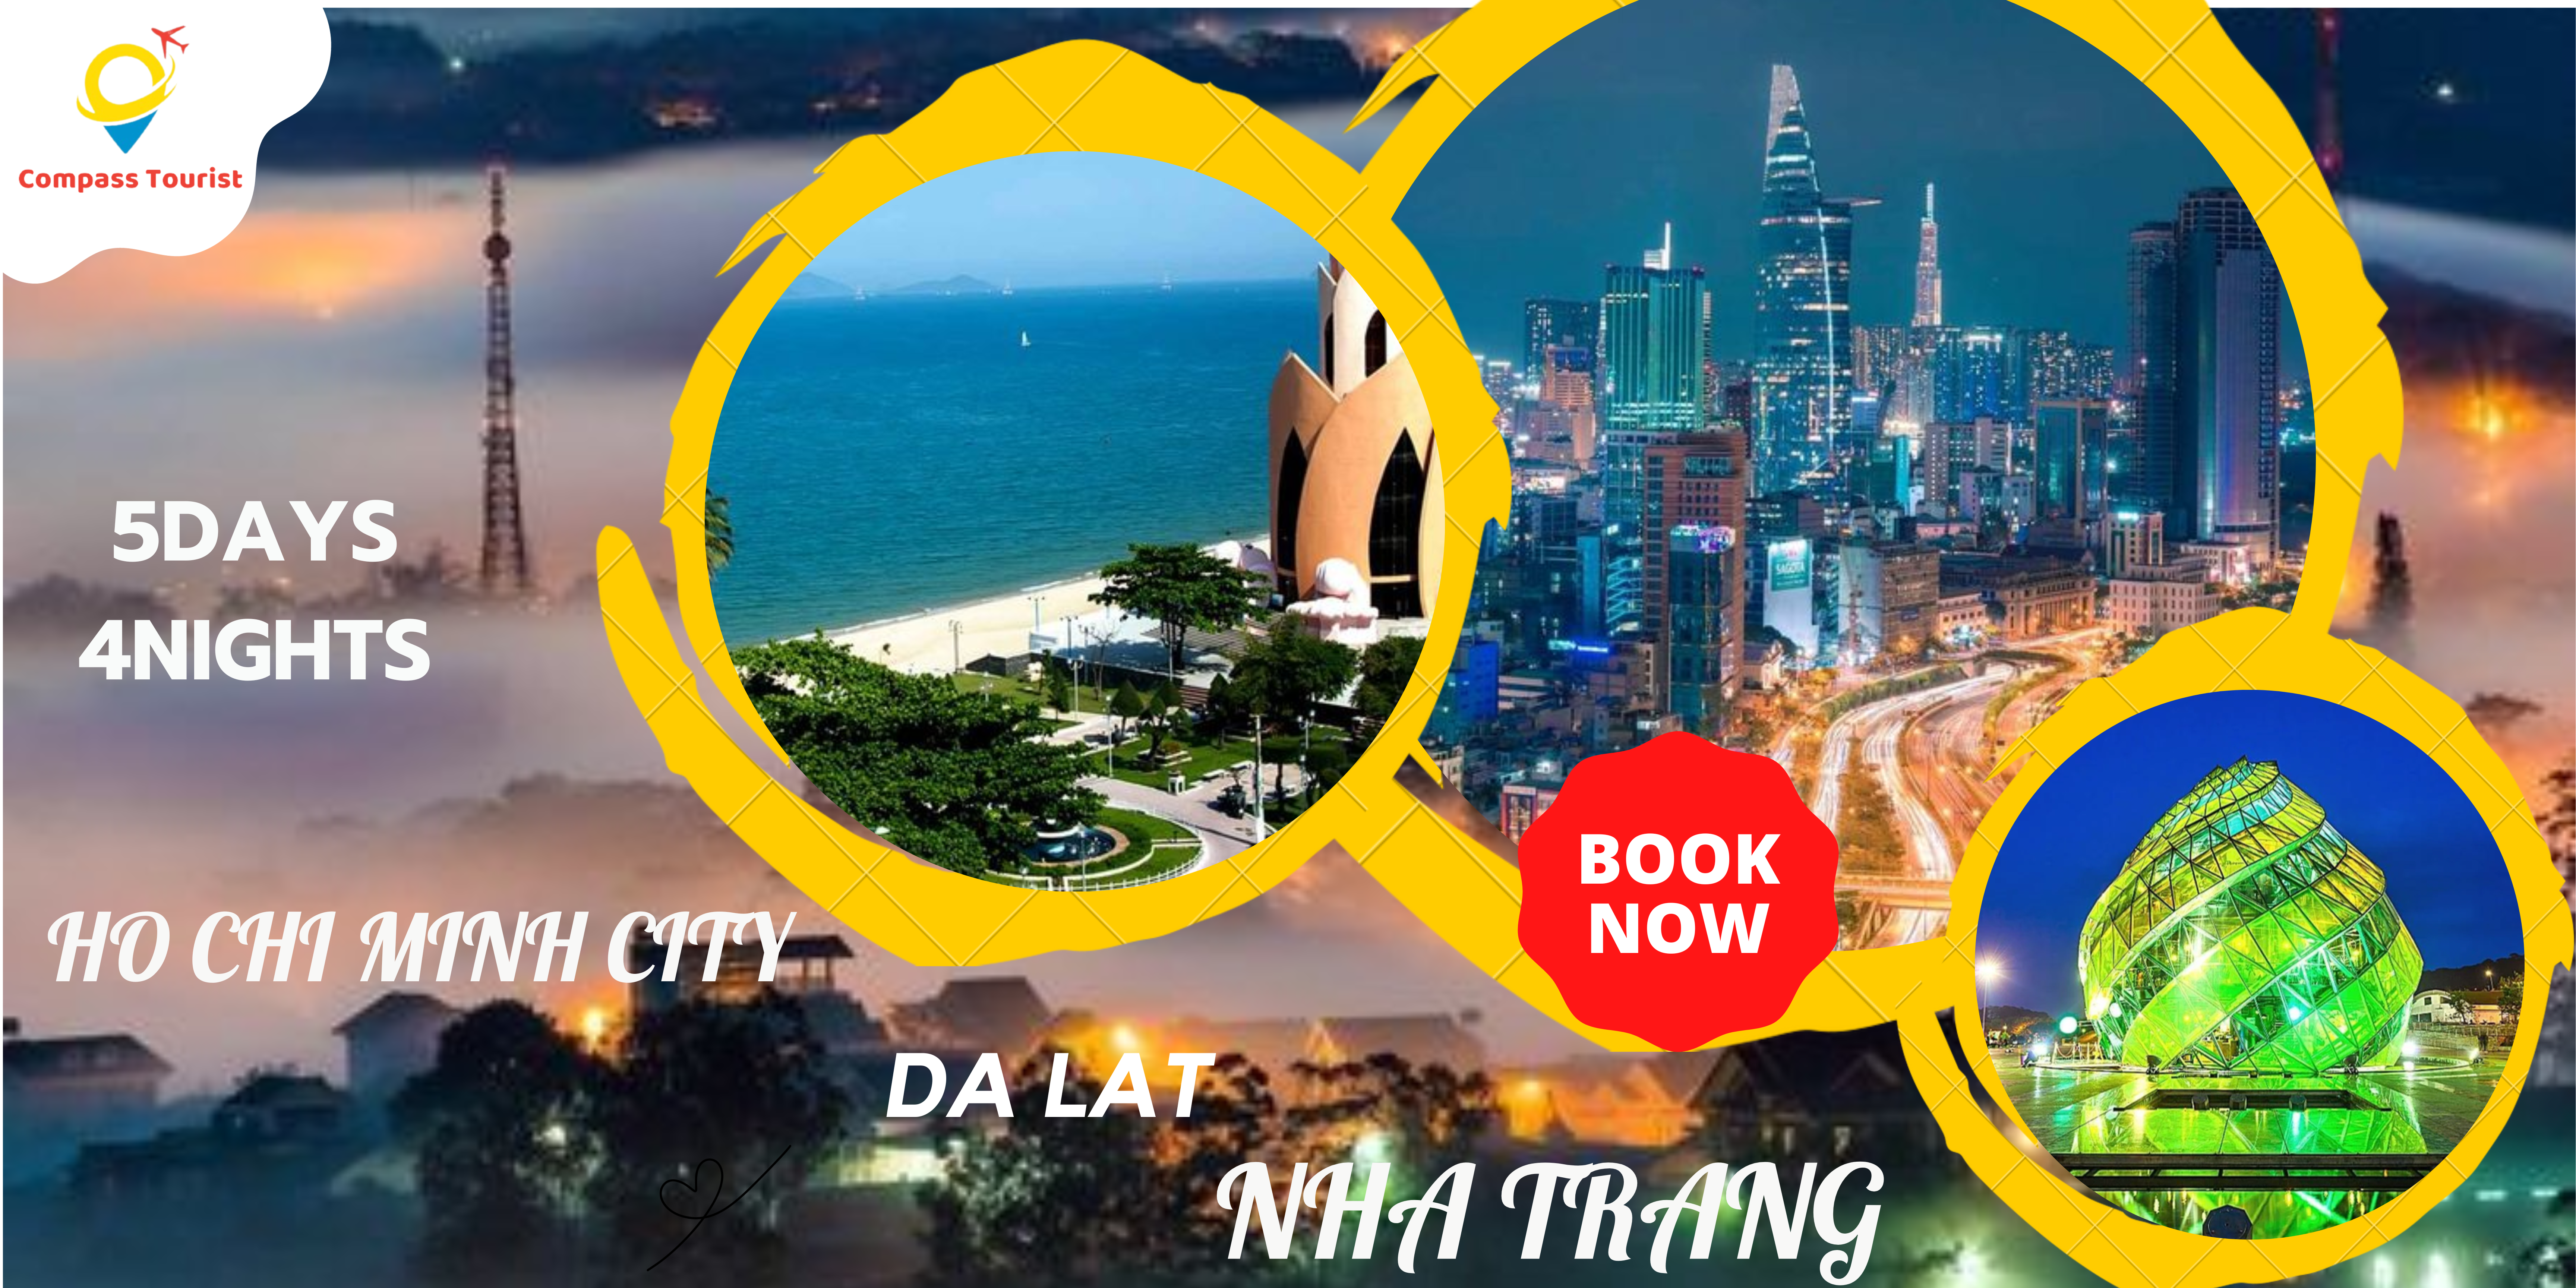 Ho Chi Minh City – Dalat – Nha Trang 5 days 4 nights